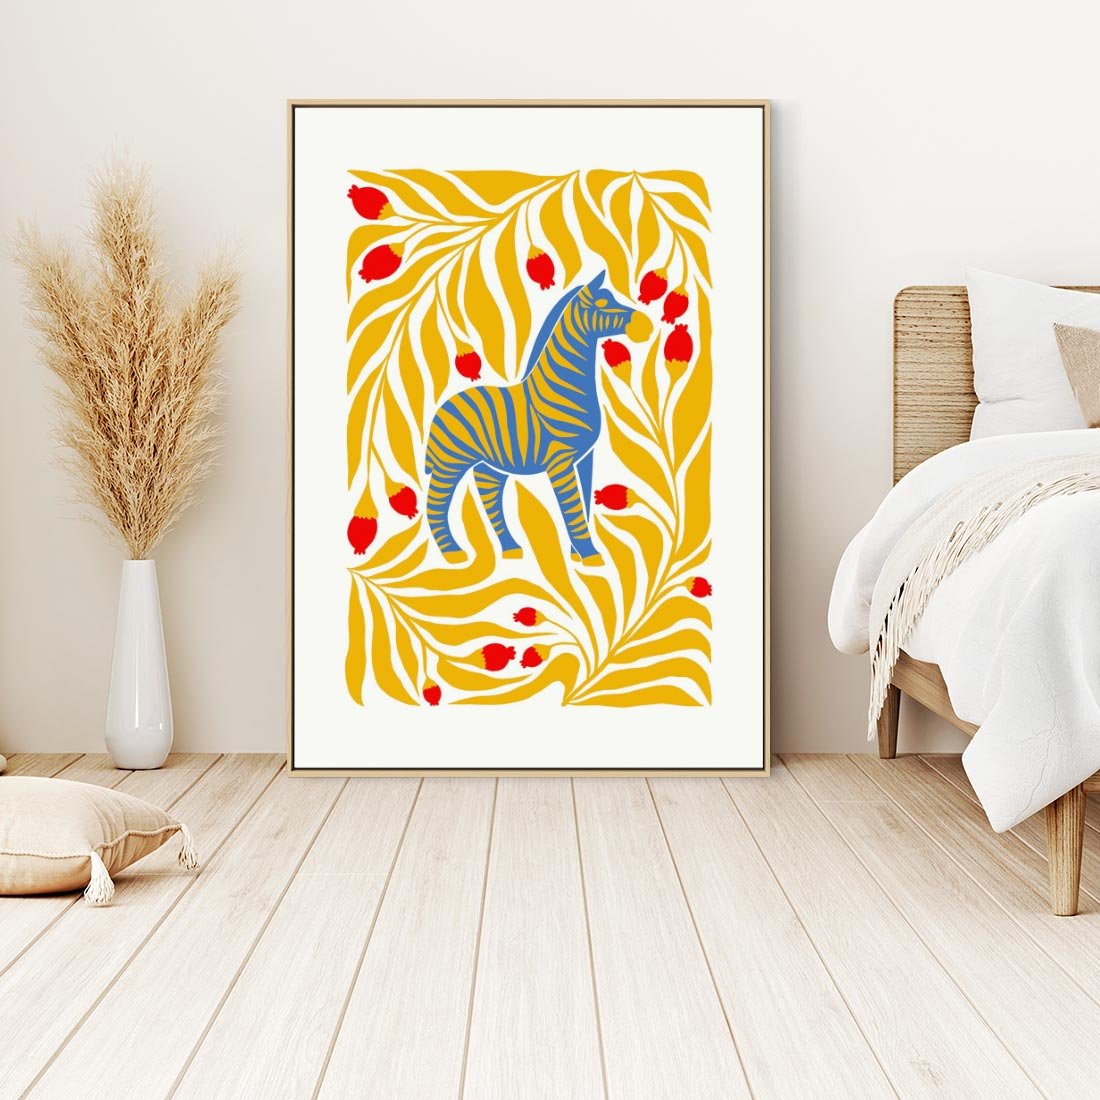 Obraz w ramie 50x70 - Zebra w Nowoczesności - abstrakcyjna nowoczesna grafika, pośrodku zebra - rama drewno